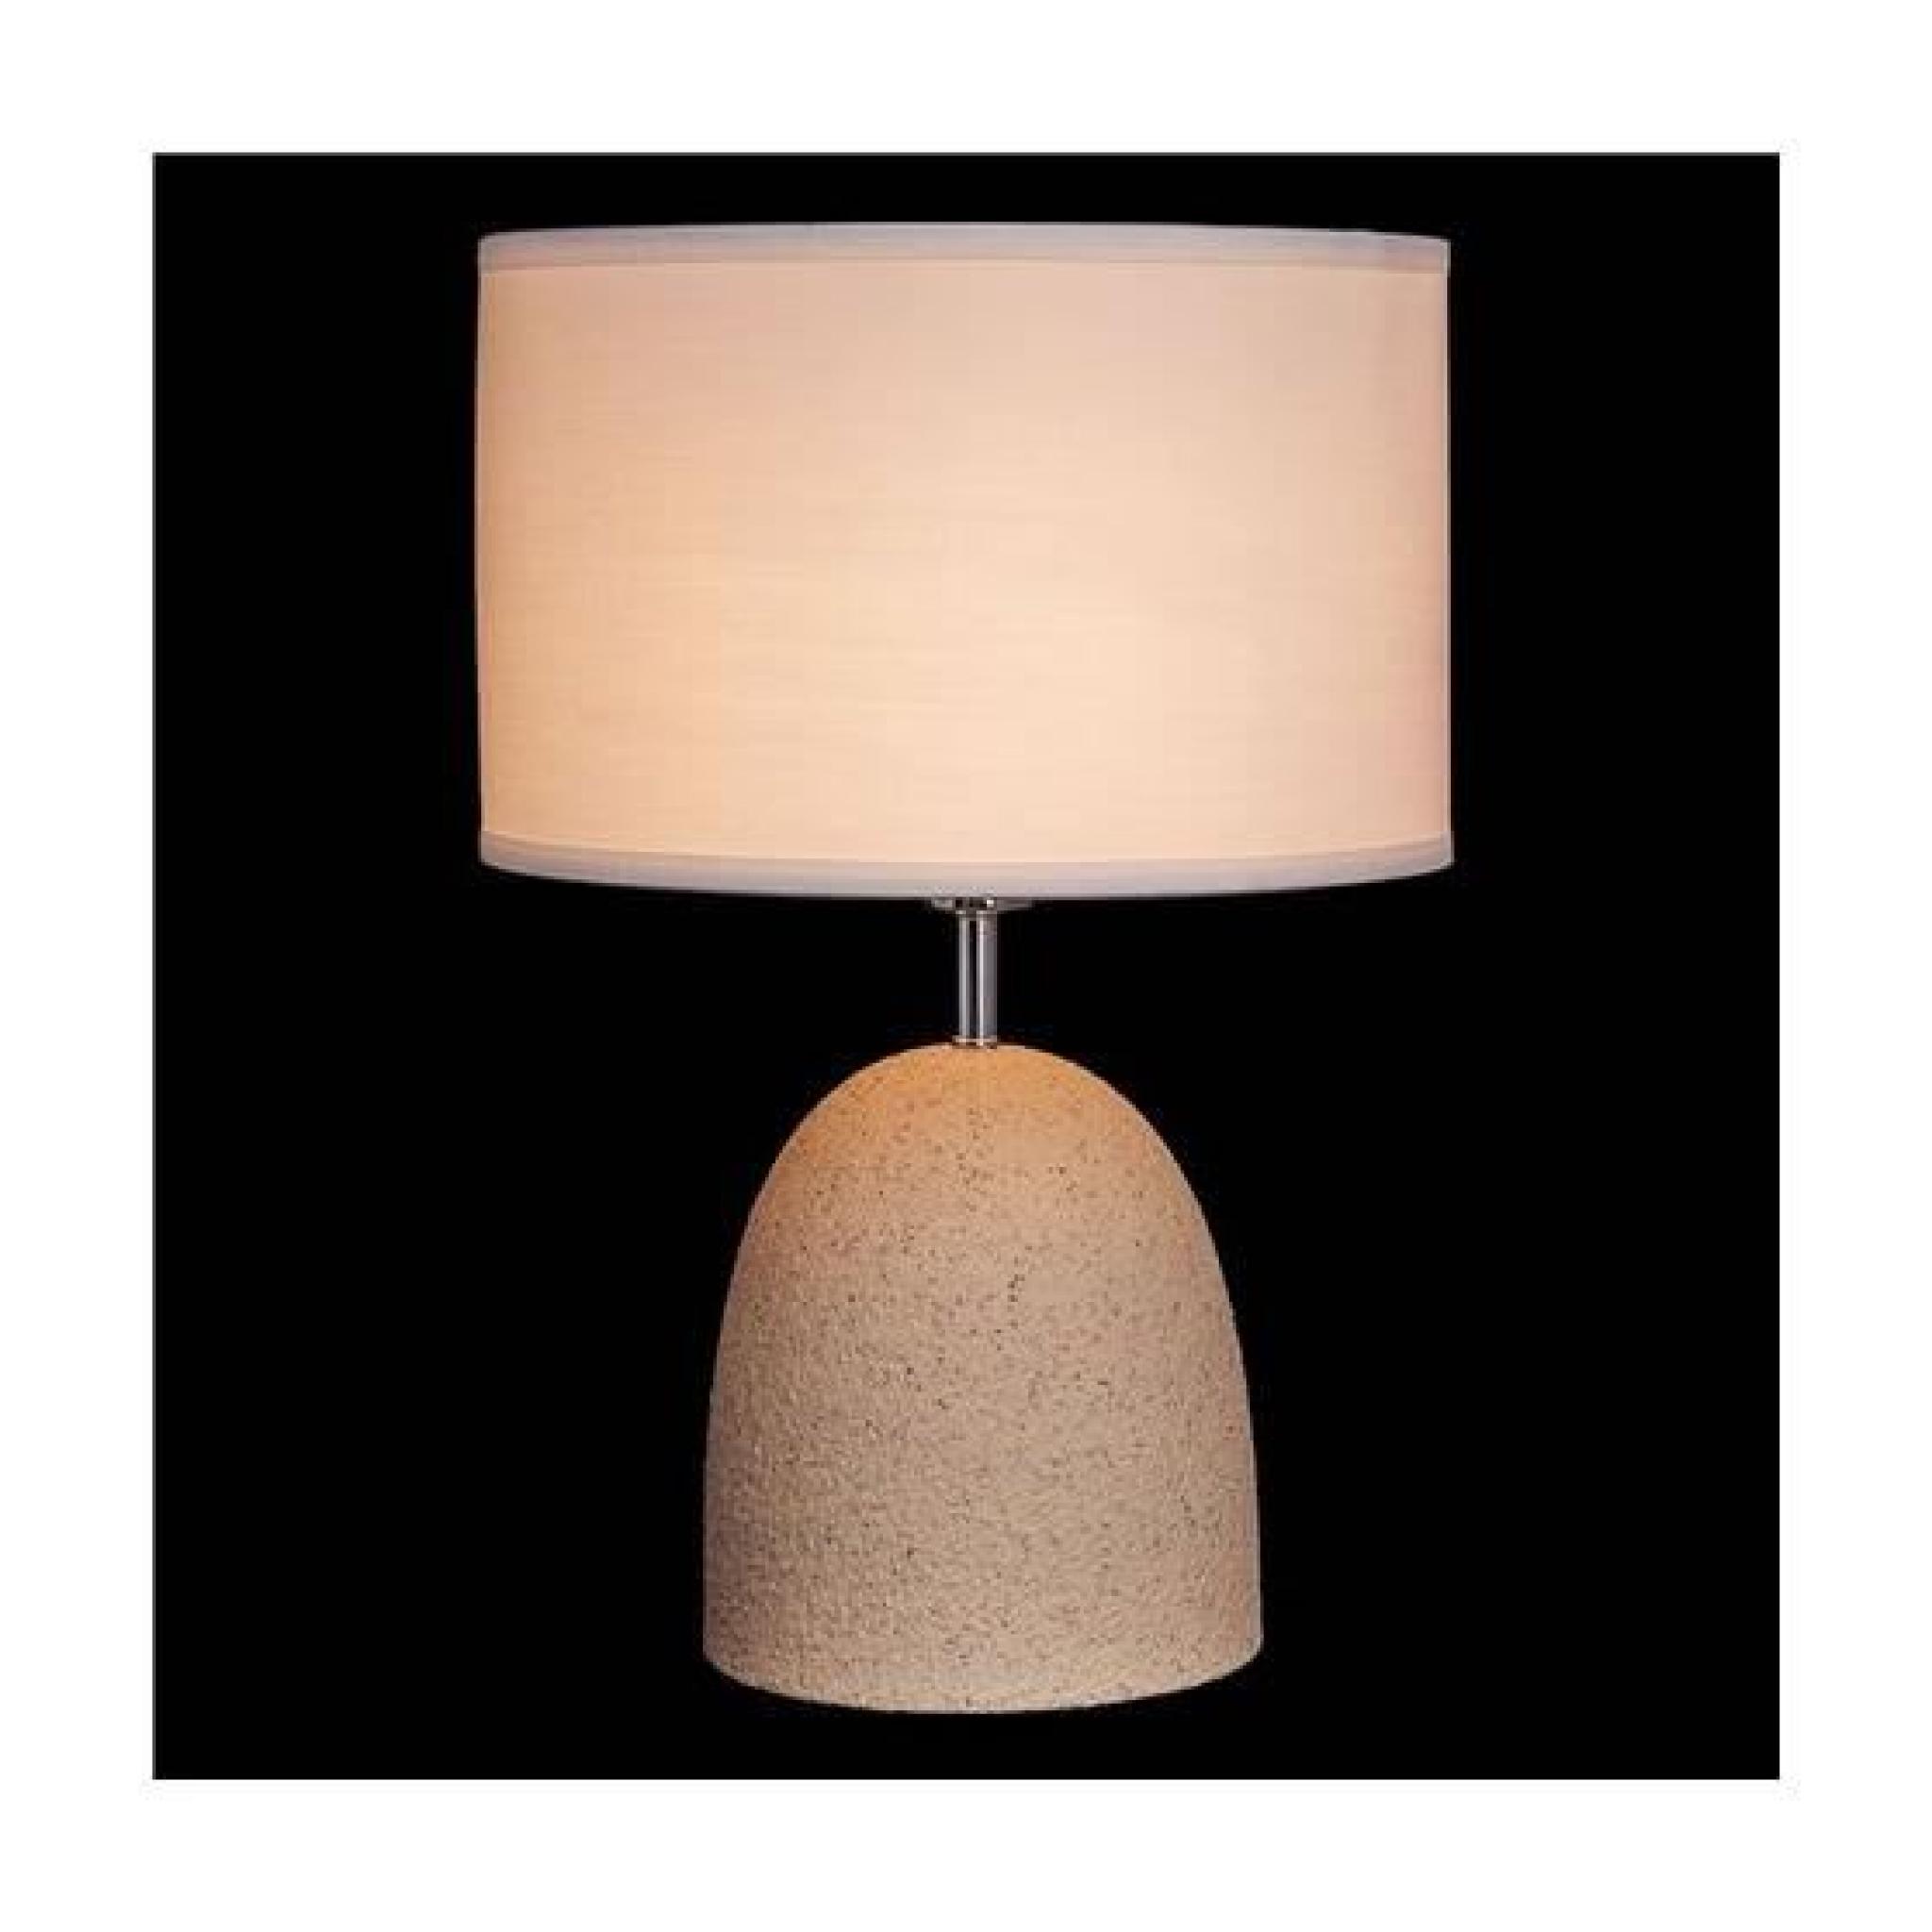 Lampe de table Megapolis 654030101 Chrome 1 x 60W pas cher